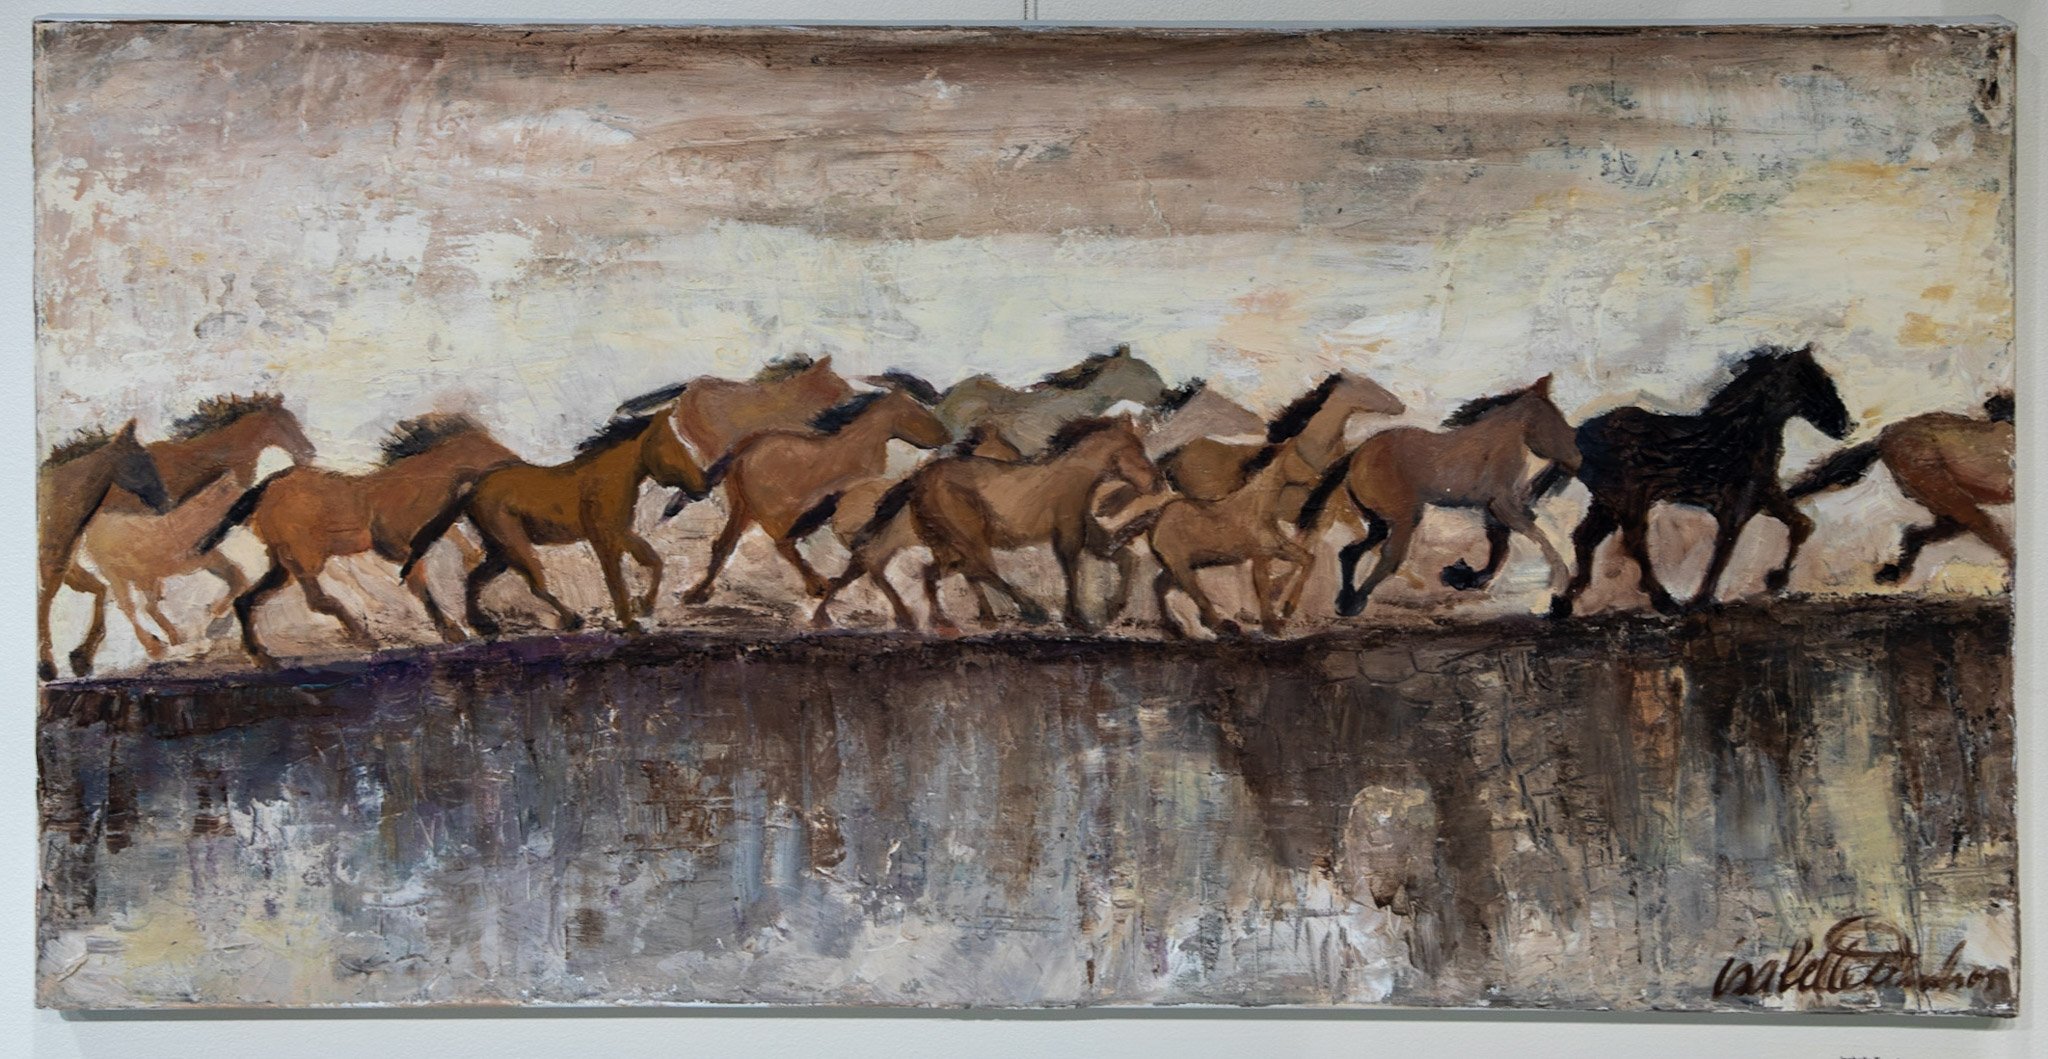 Isabelle Trunchon, "Kiger Gorge II," Oil